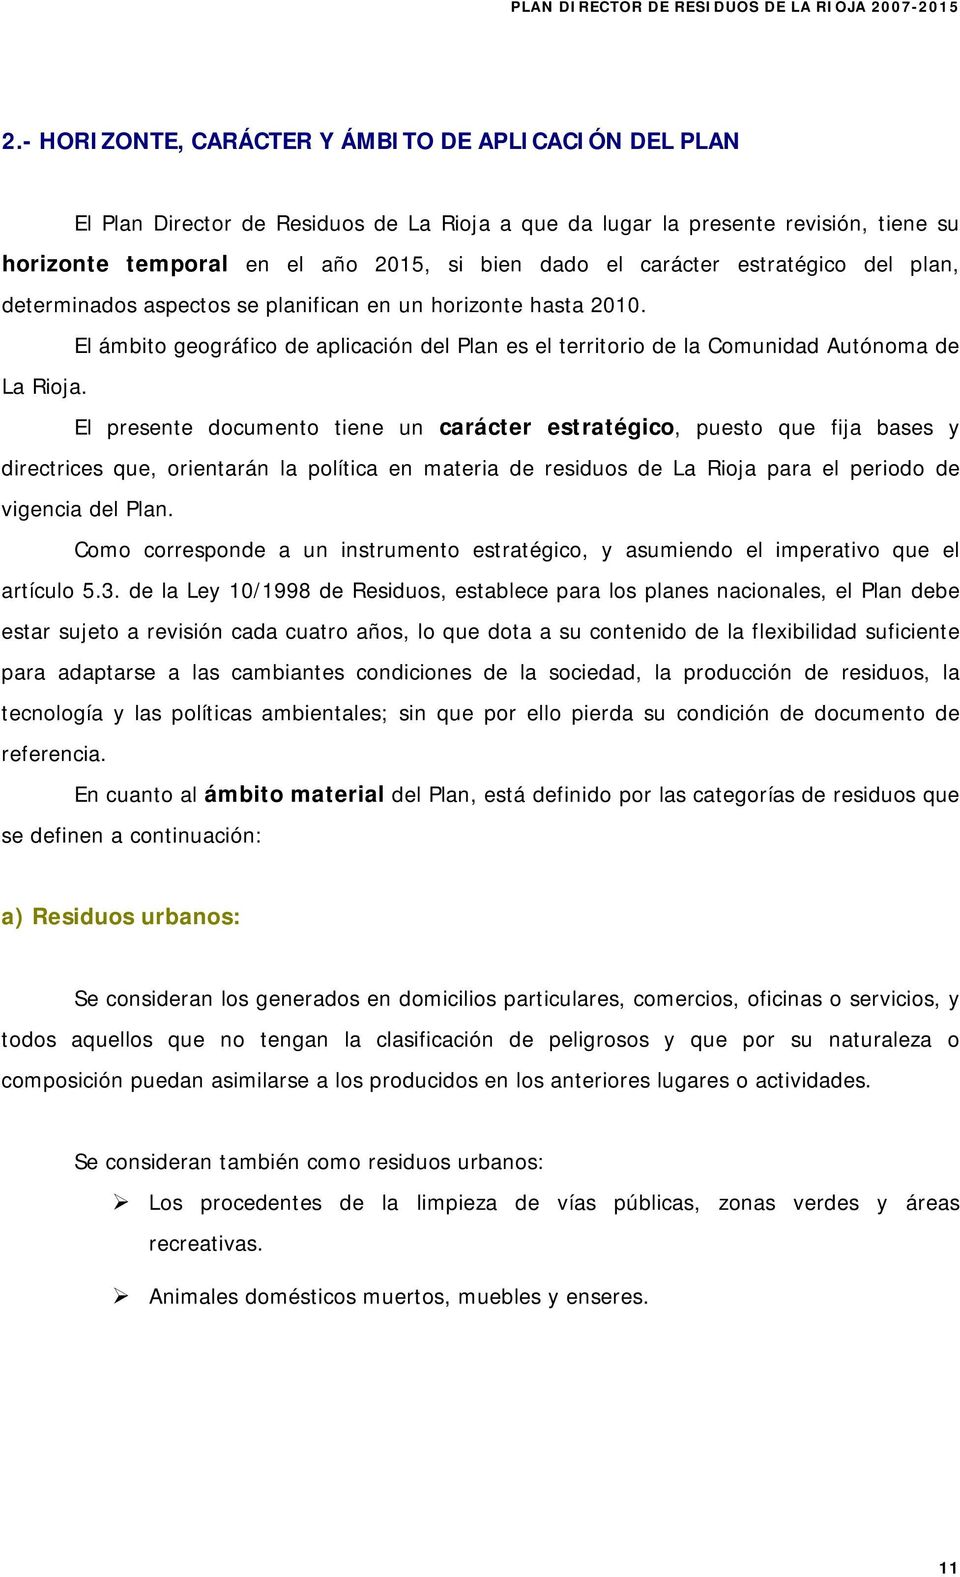 El presente documento tiene un carácter estratégico, puesto que fija bases y directrices que, orientarán la política en materia de residuos de La Rioja para el periodo de vigencia del Plan.